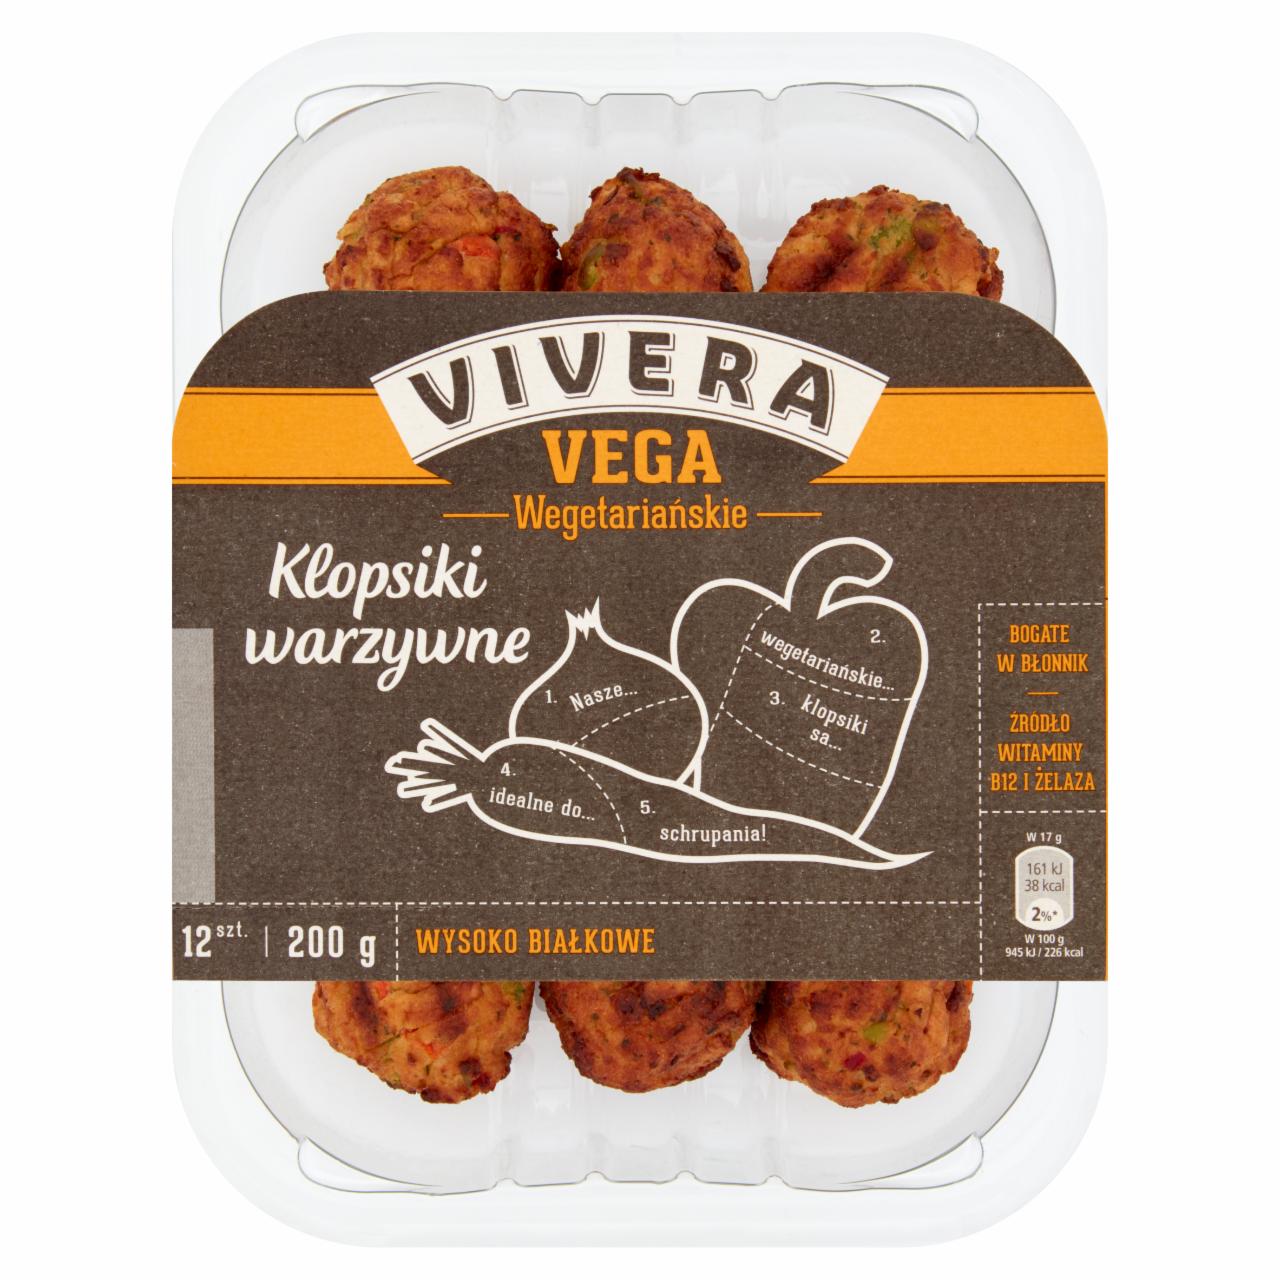 Zdjęcia - Vivera Wegetariańskie klopsiki warzywne 200 g (12 sztuk)